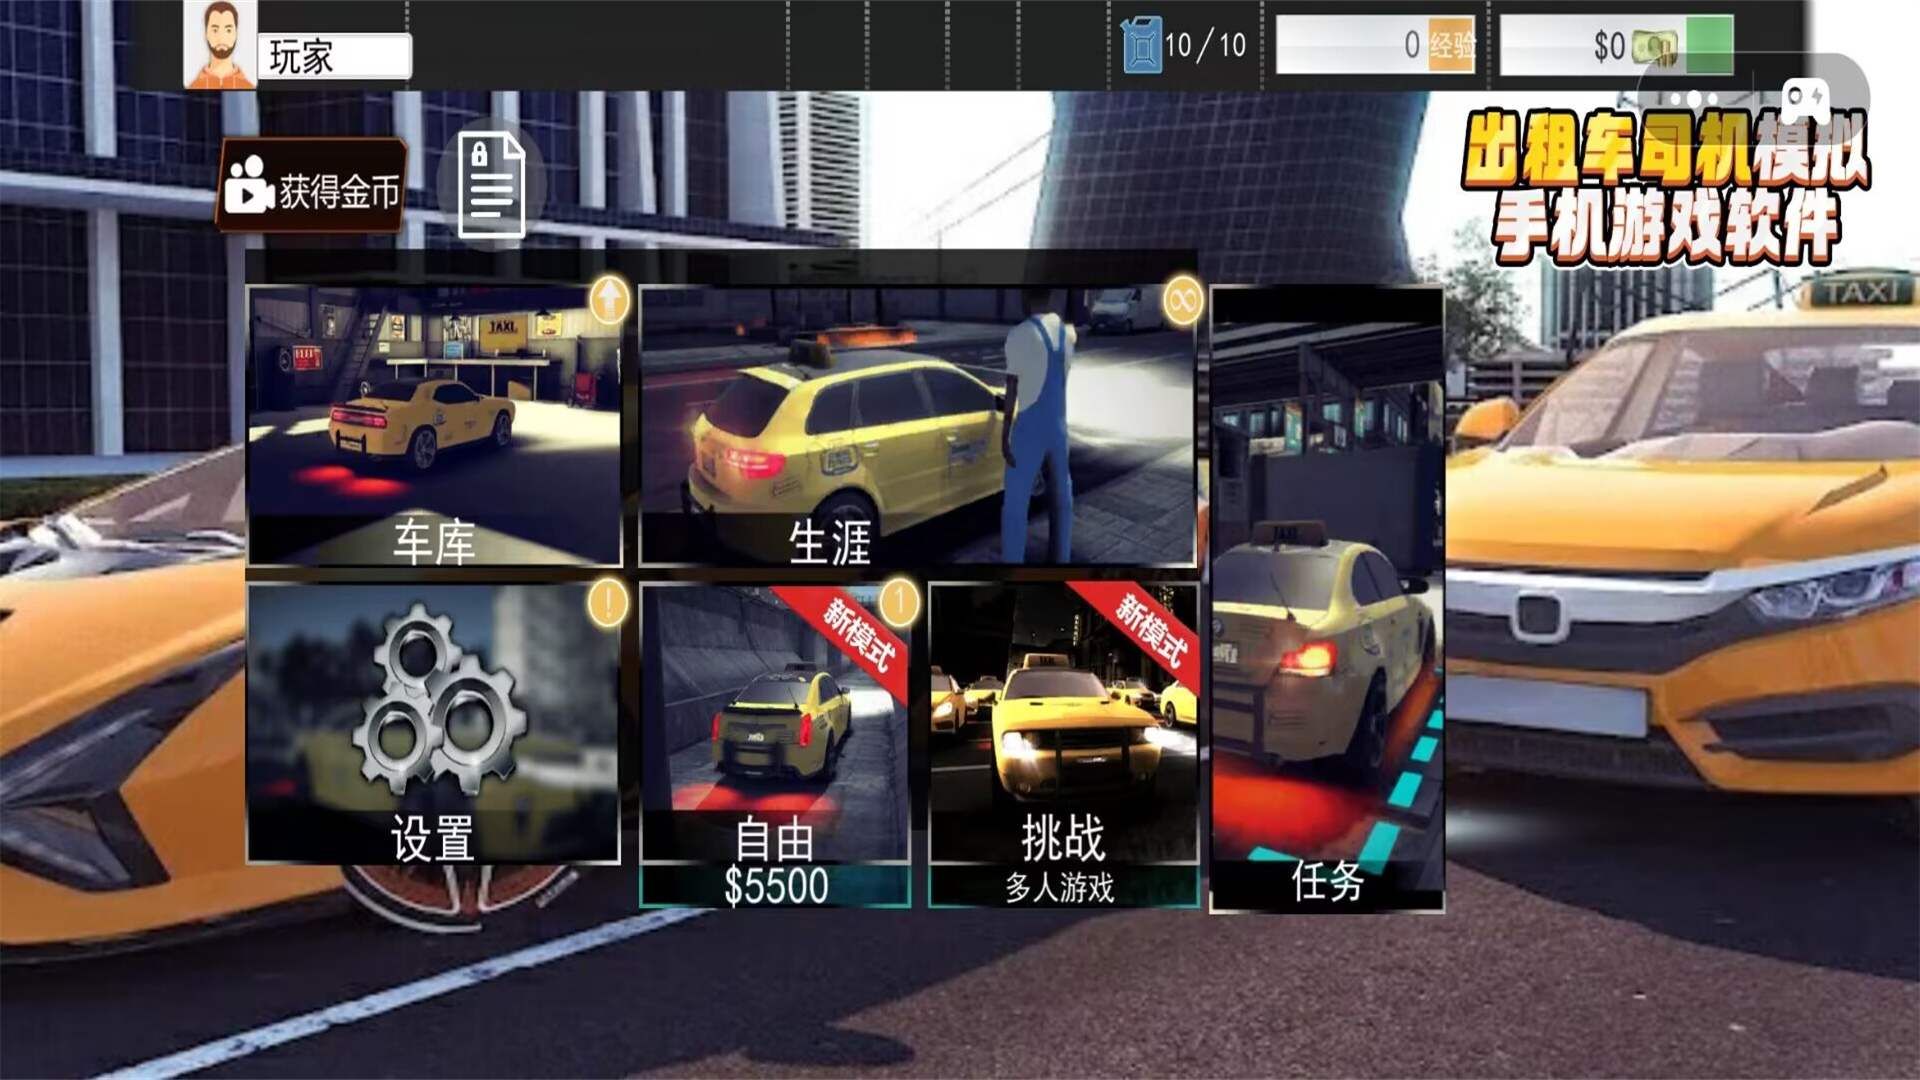 出租车司机模拟游戏第2张截图